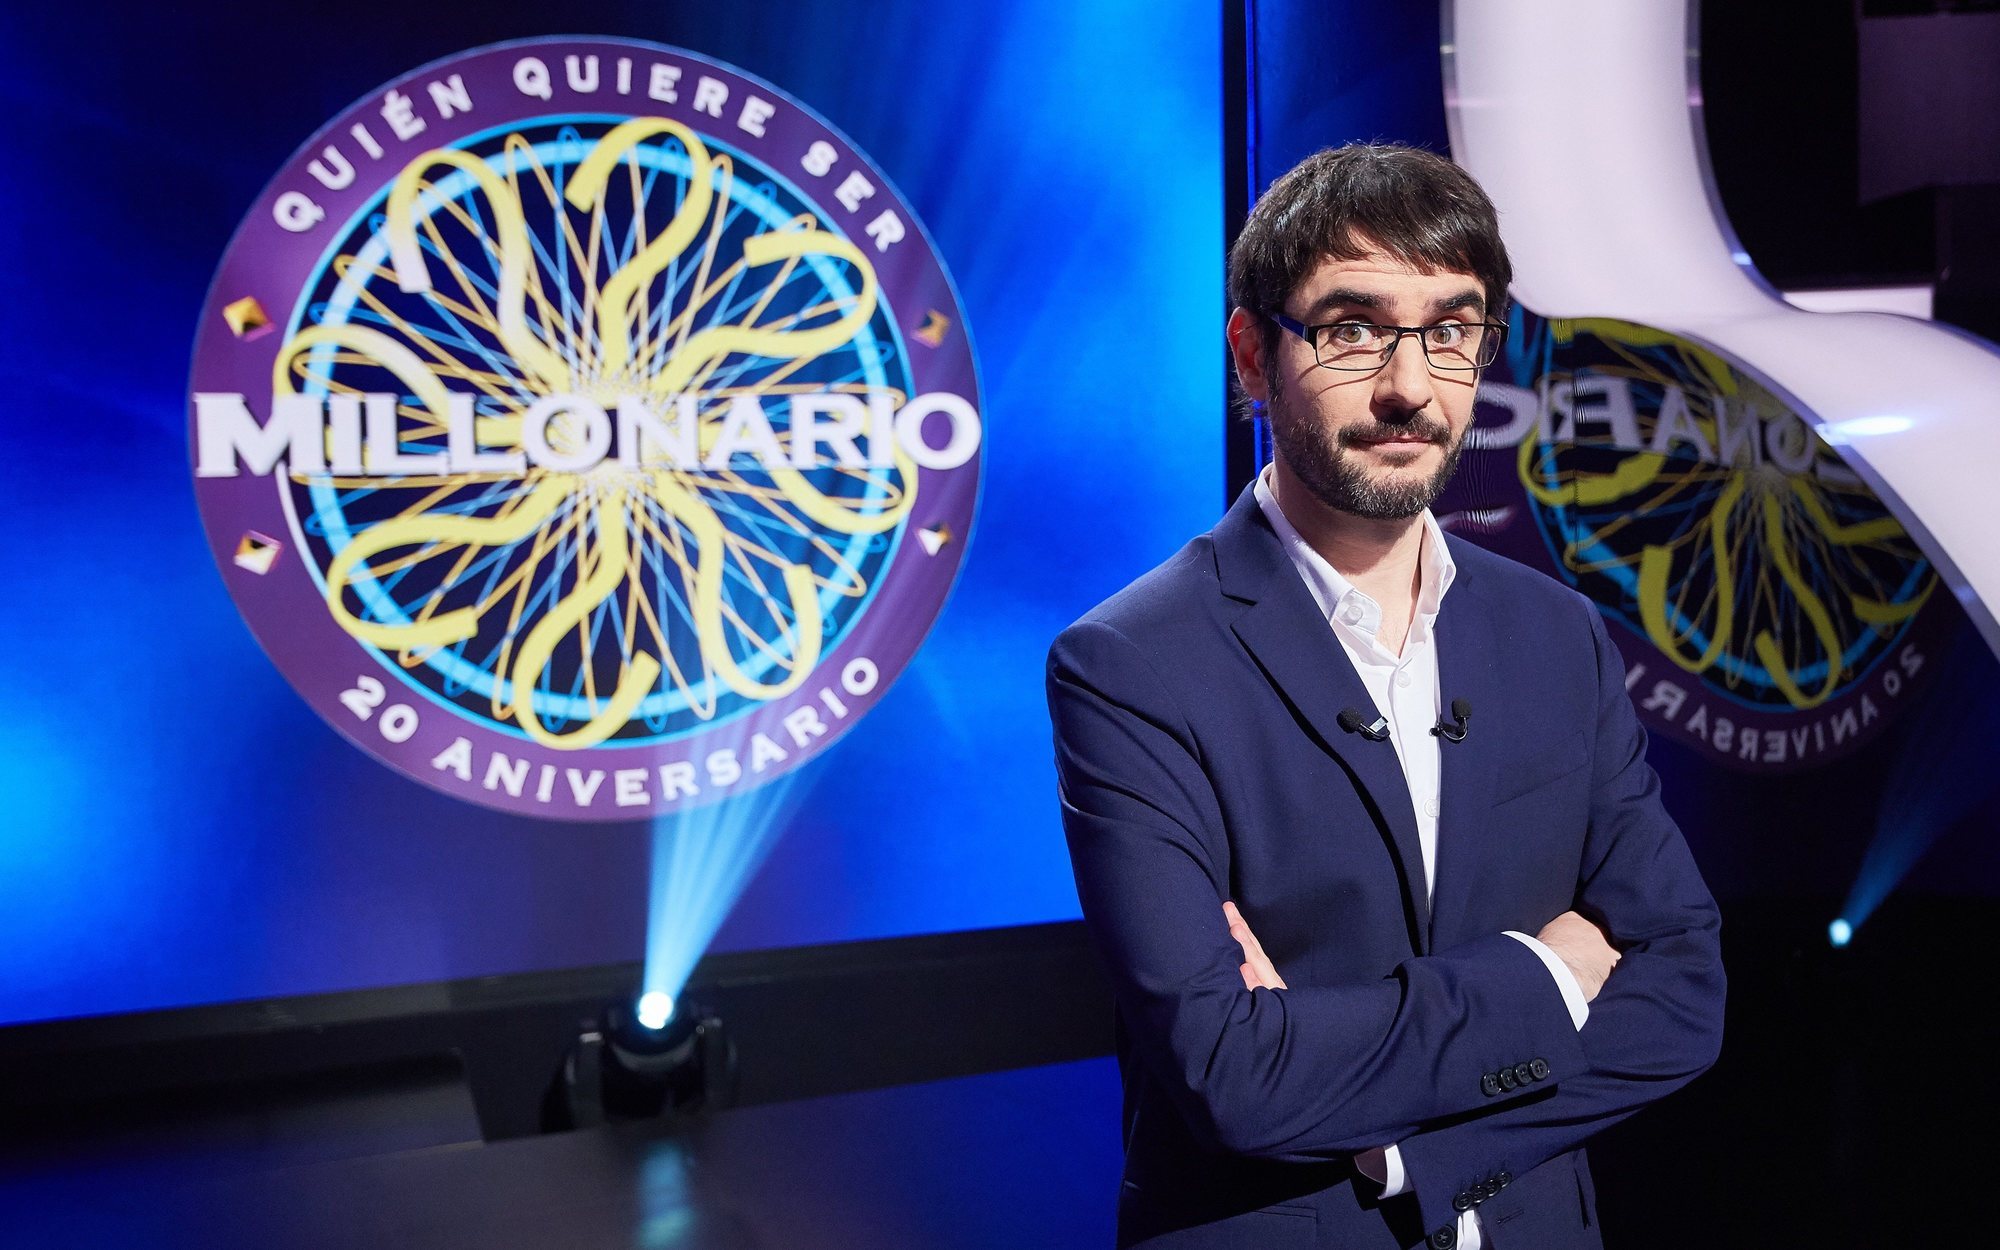 '¿Quién quiere ser millonario?' estrena su edición famosos el viernes 12 de marzo en Antena 3